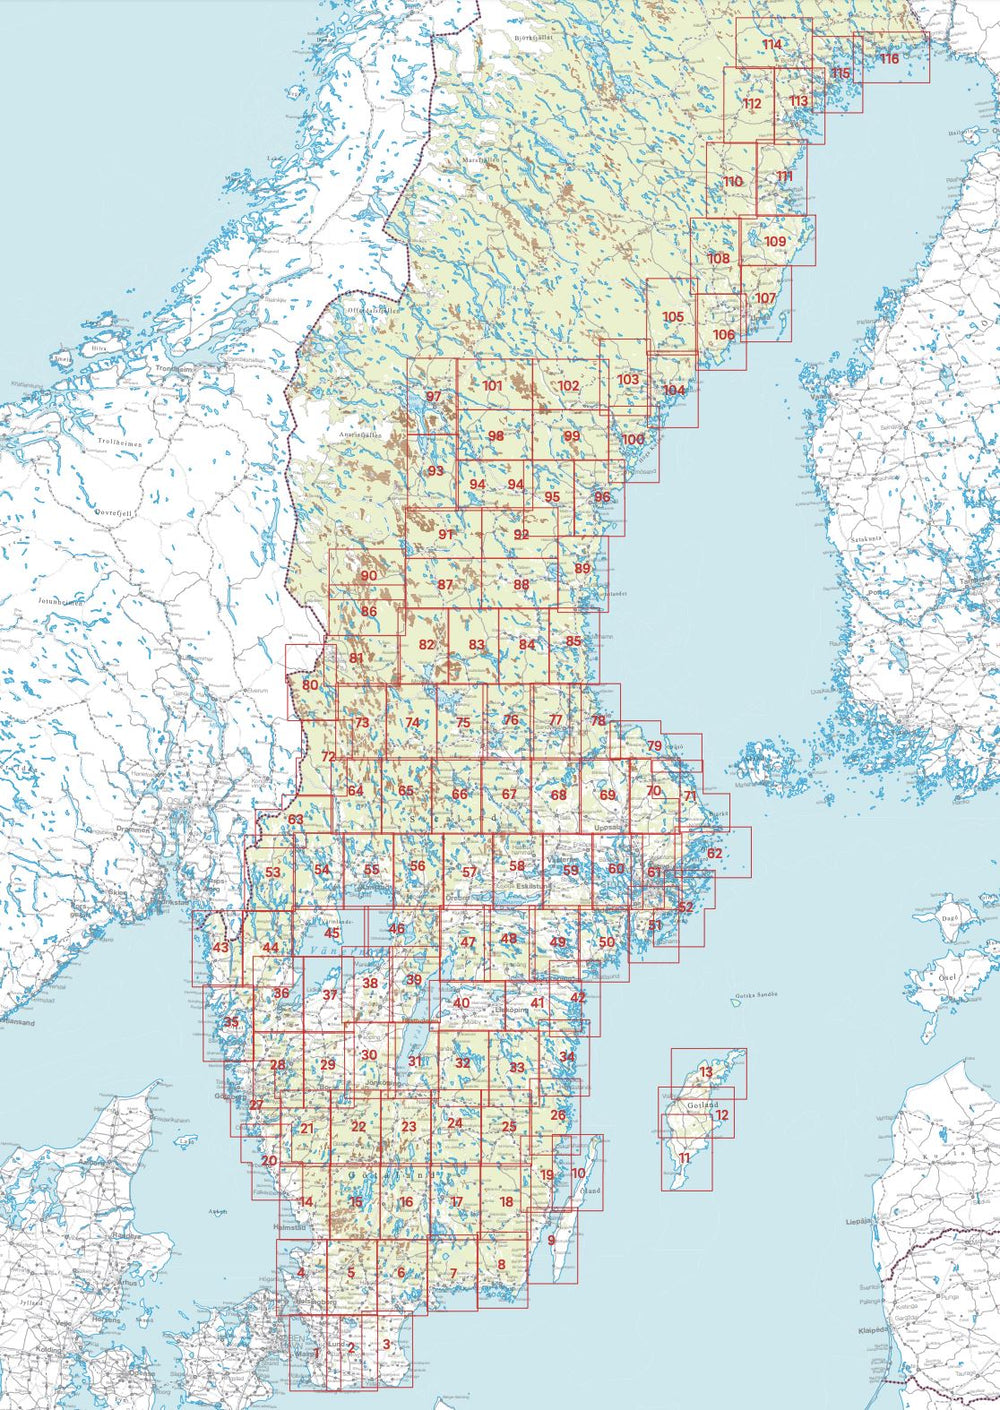 Carte topographique n° 103 - Bredbyn (Suède) | Norstedts - Sverigeserien carte pliée Norstedts 